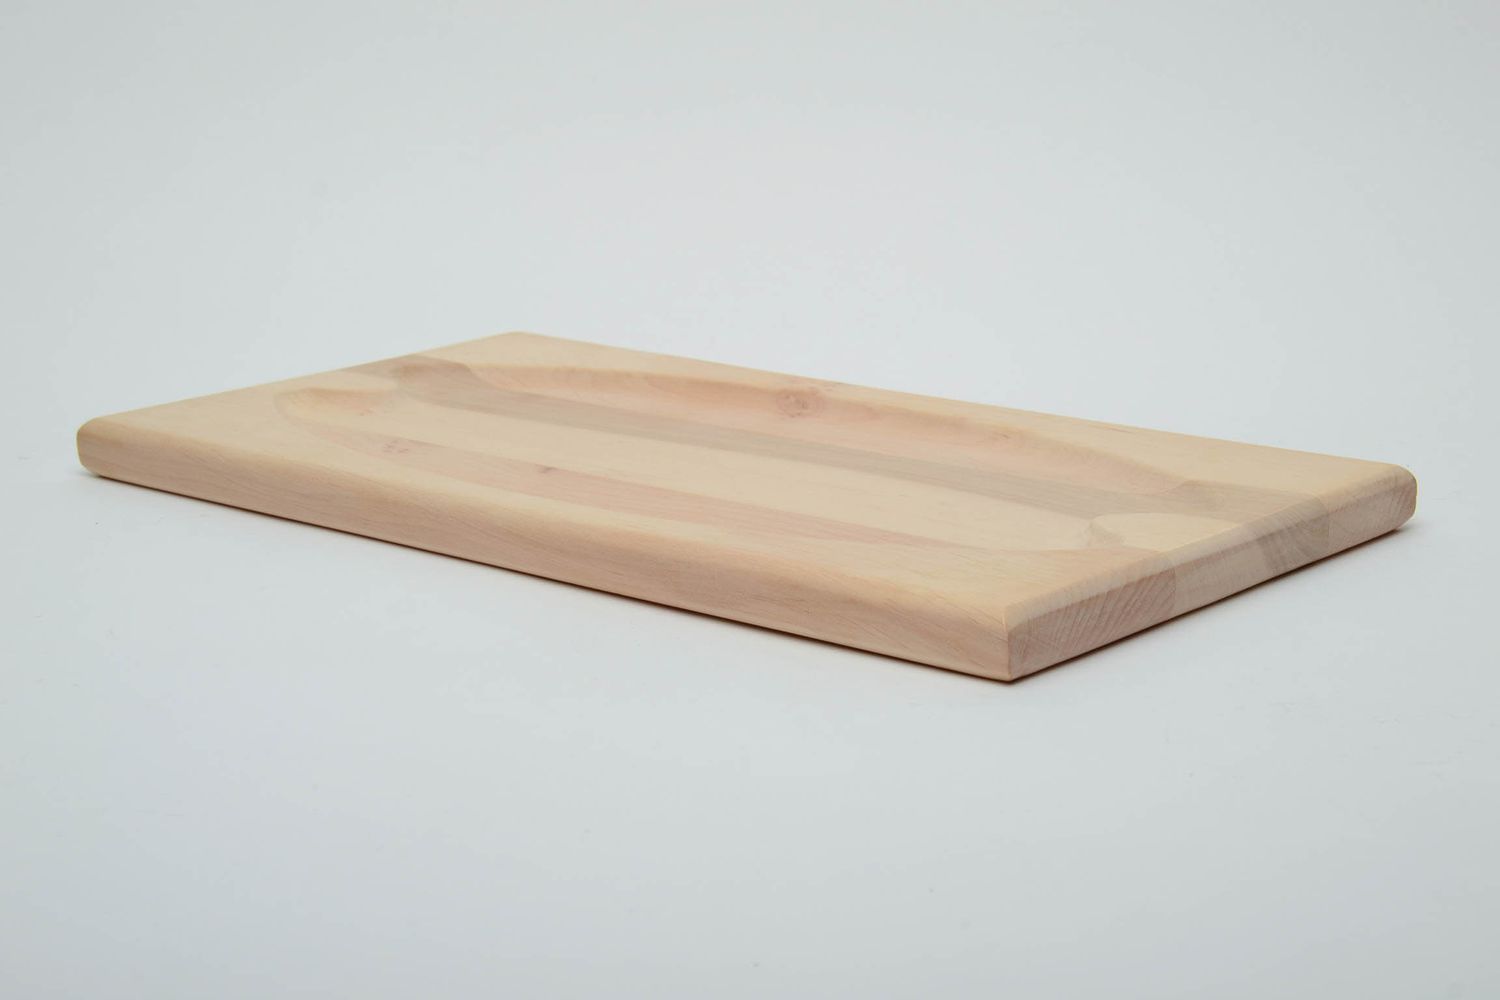 Handmade wooden blank tray photo 2